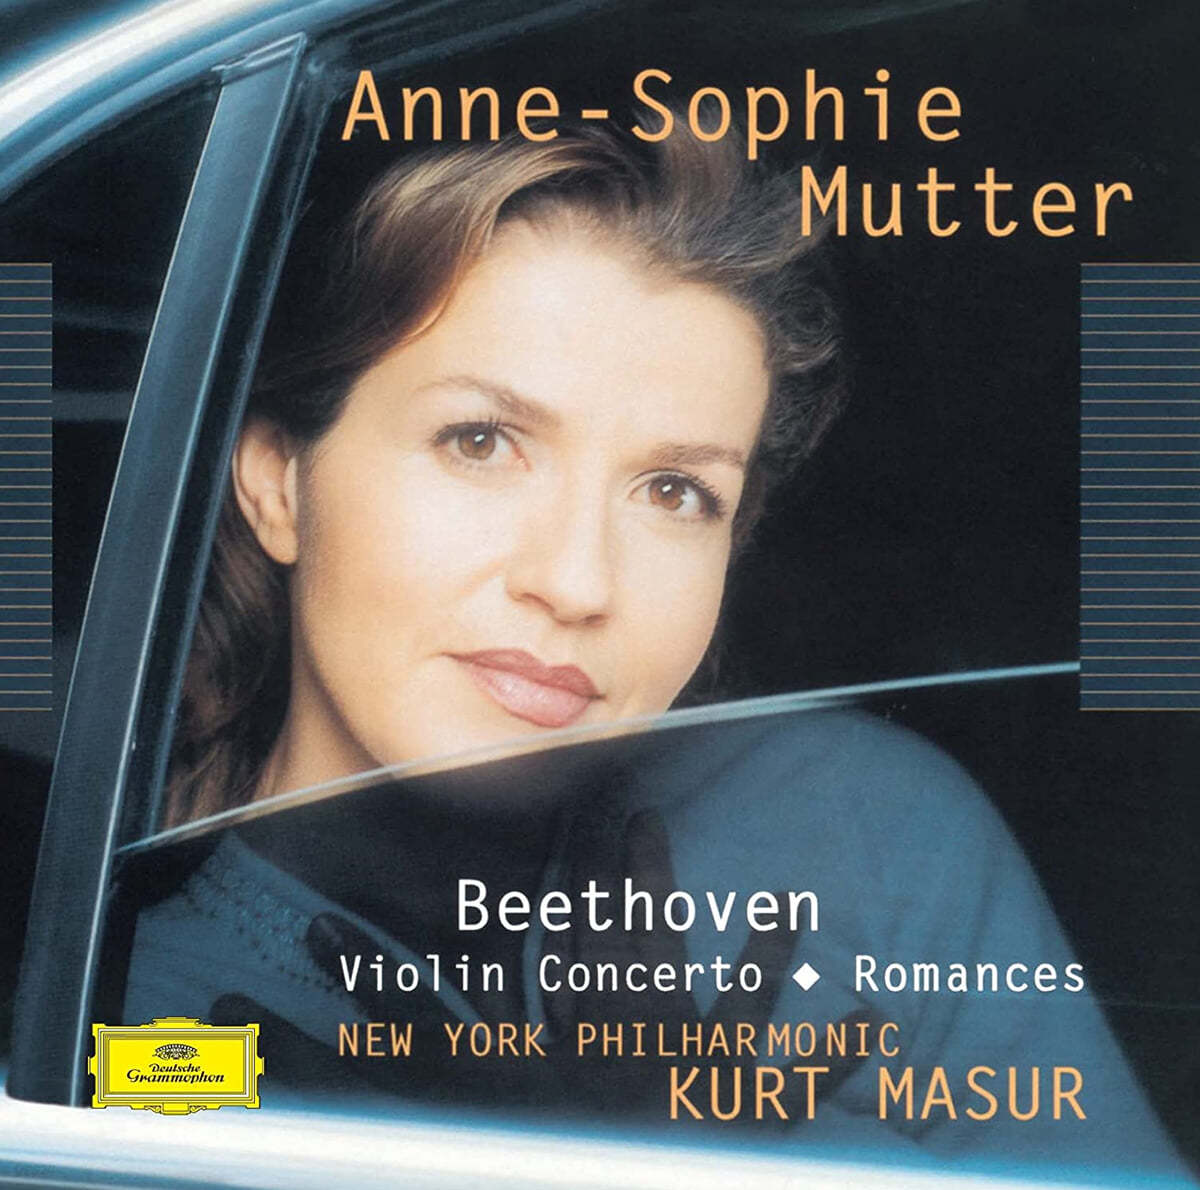 Anne-Sophie Mutter 베토벤: 바이올린 협주곡, 로망스  1, 2번 (Beethoven: Violin Concerto, Romance Nos. 1, 2) 